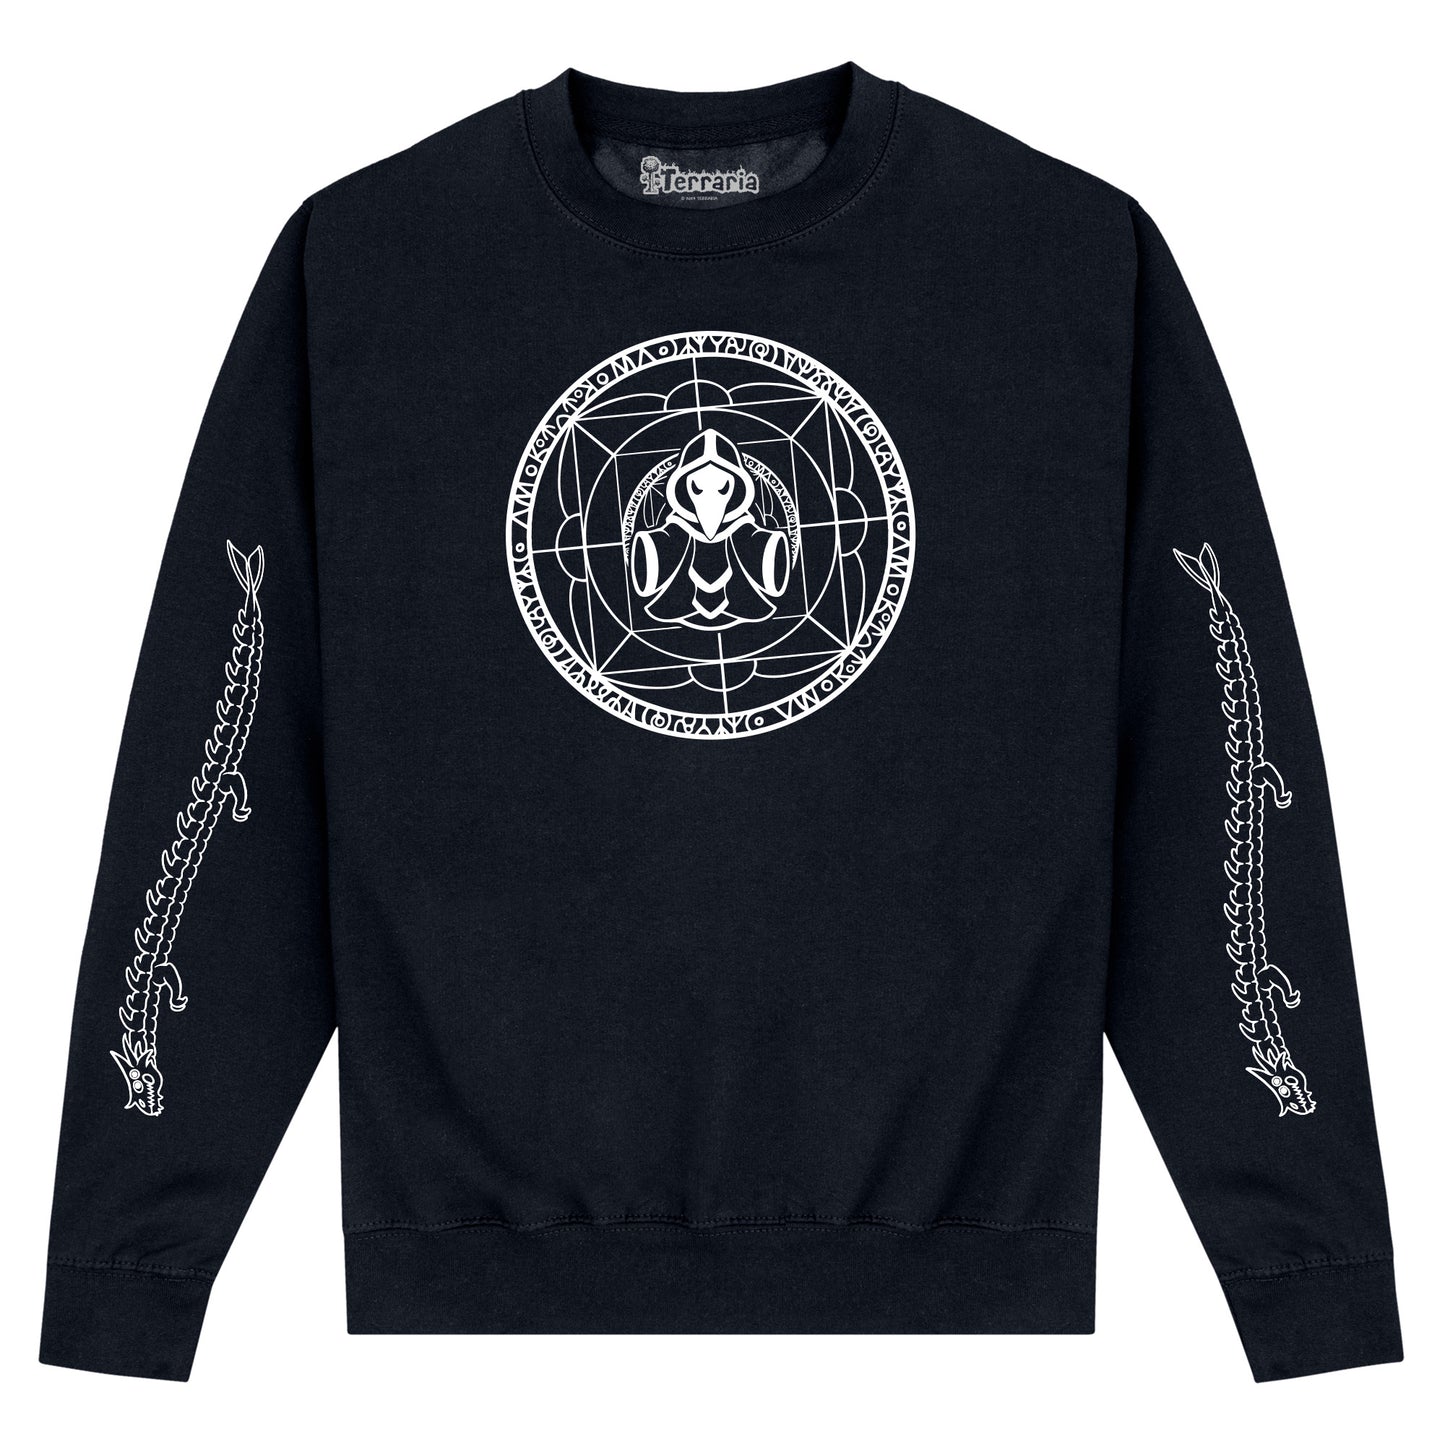 Terraria Emblem Sweatshirt - Black